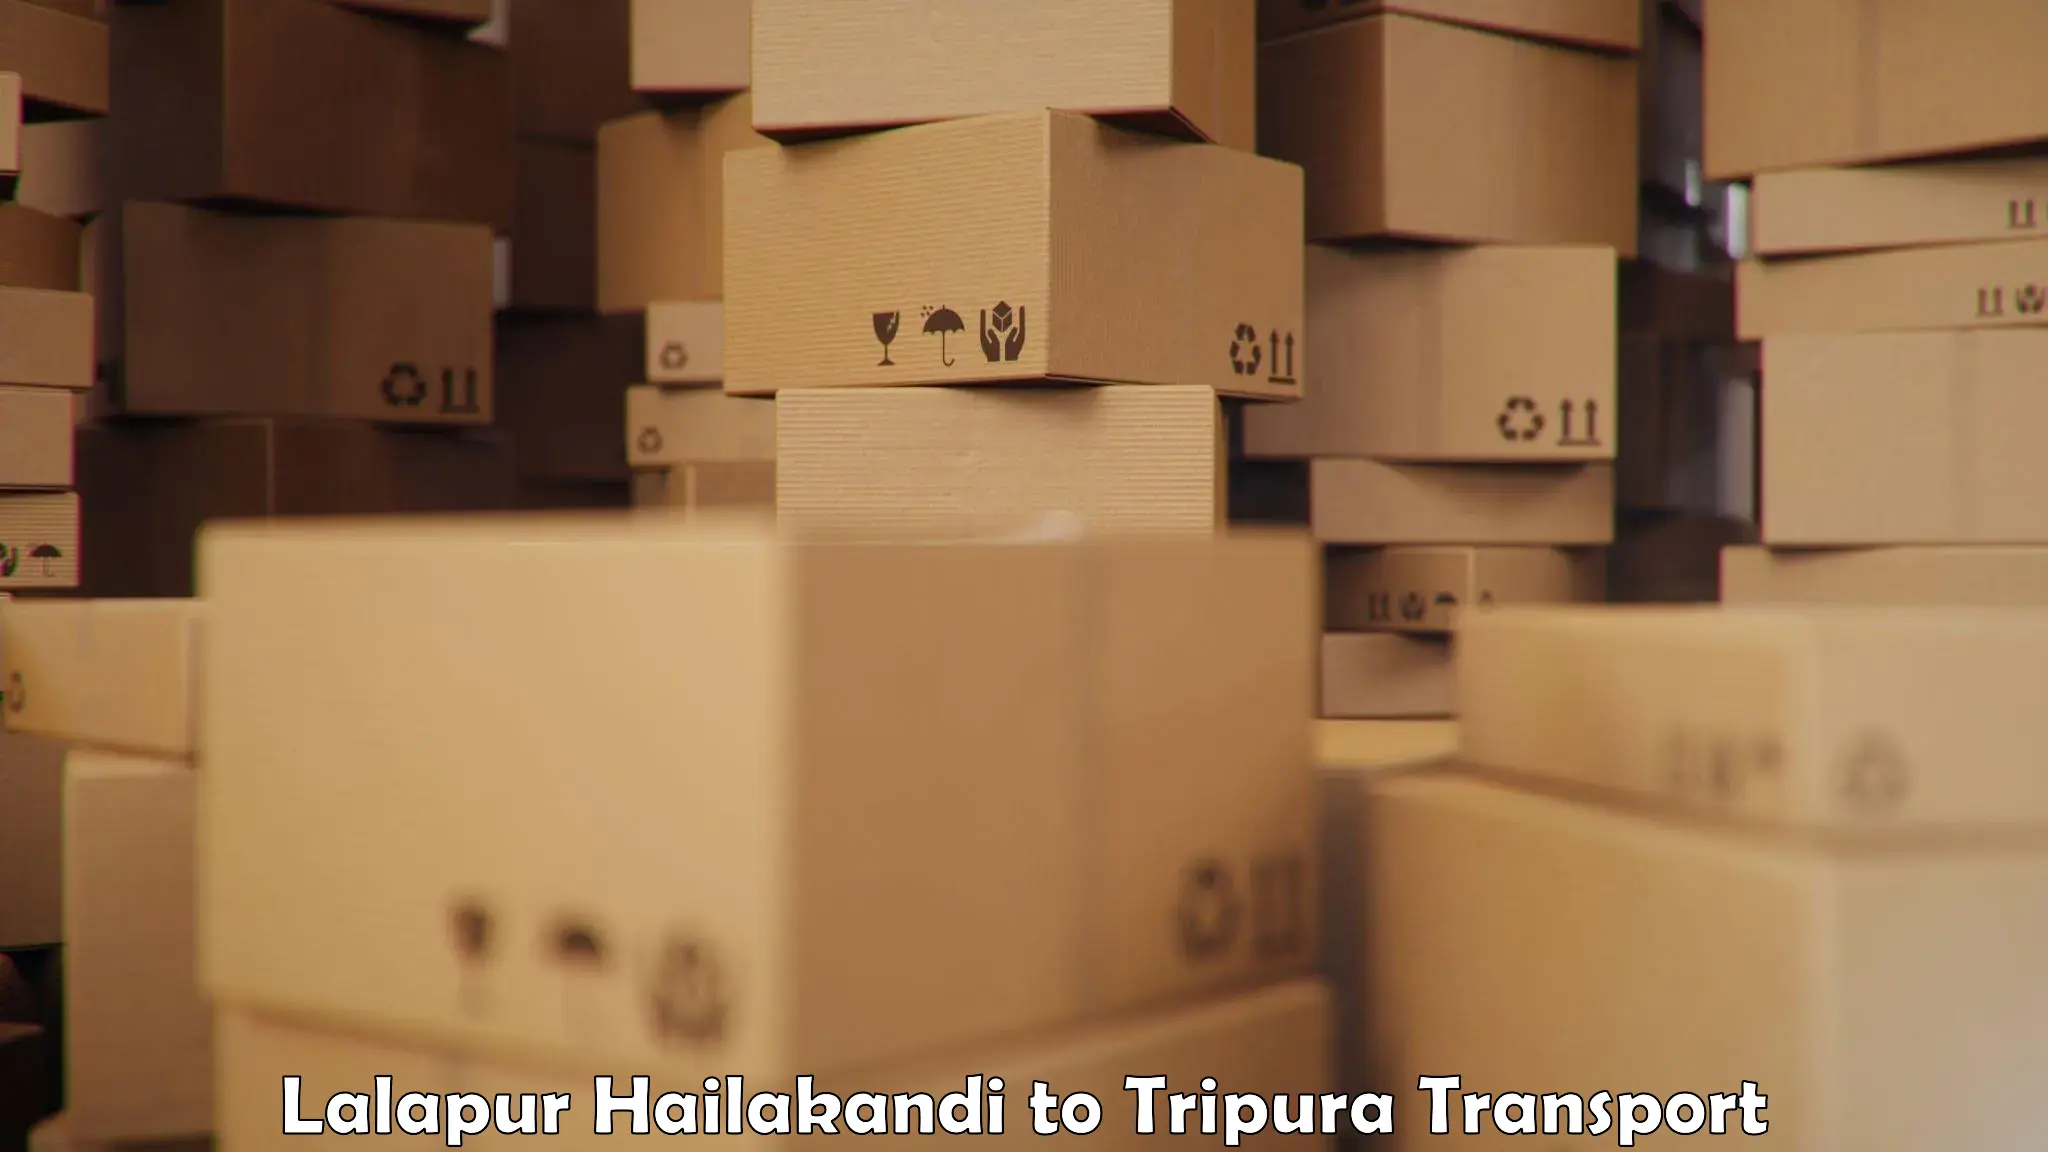 Truck transport companies in India Lalapur Hailakandi to IIIT Agartala